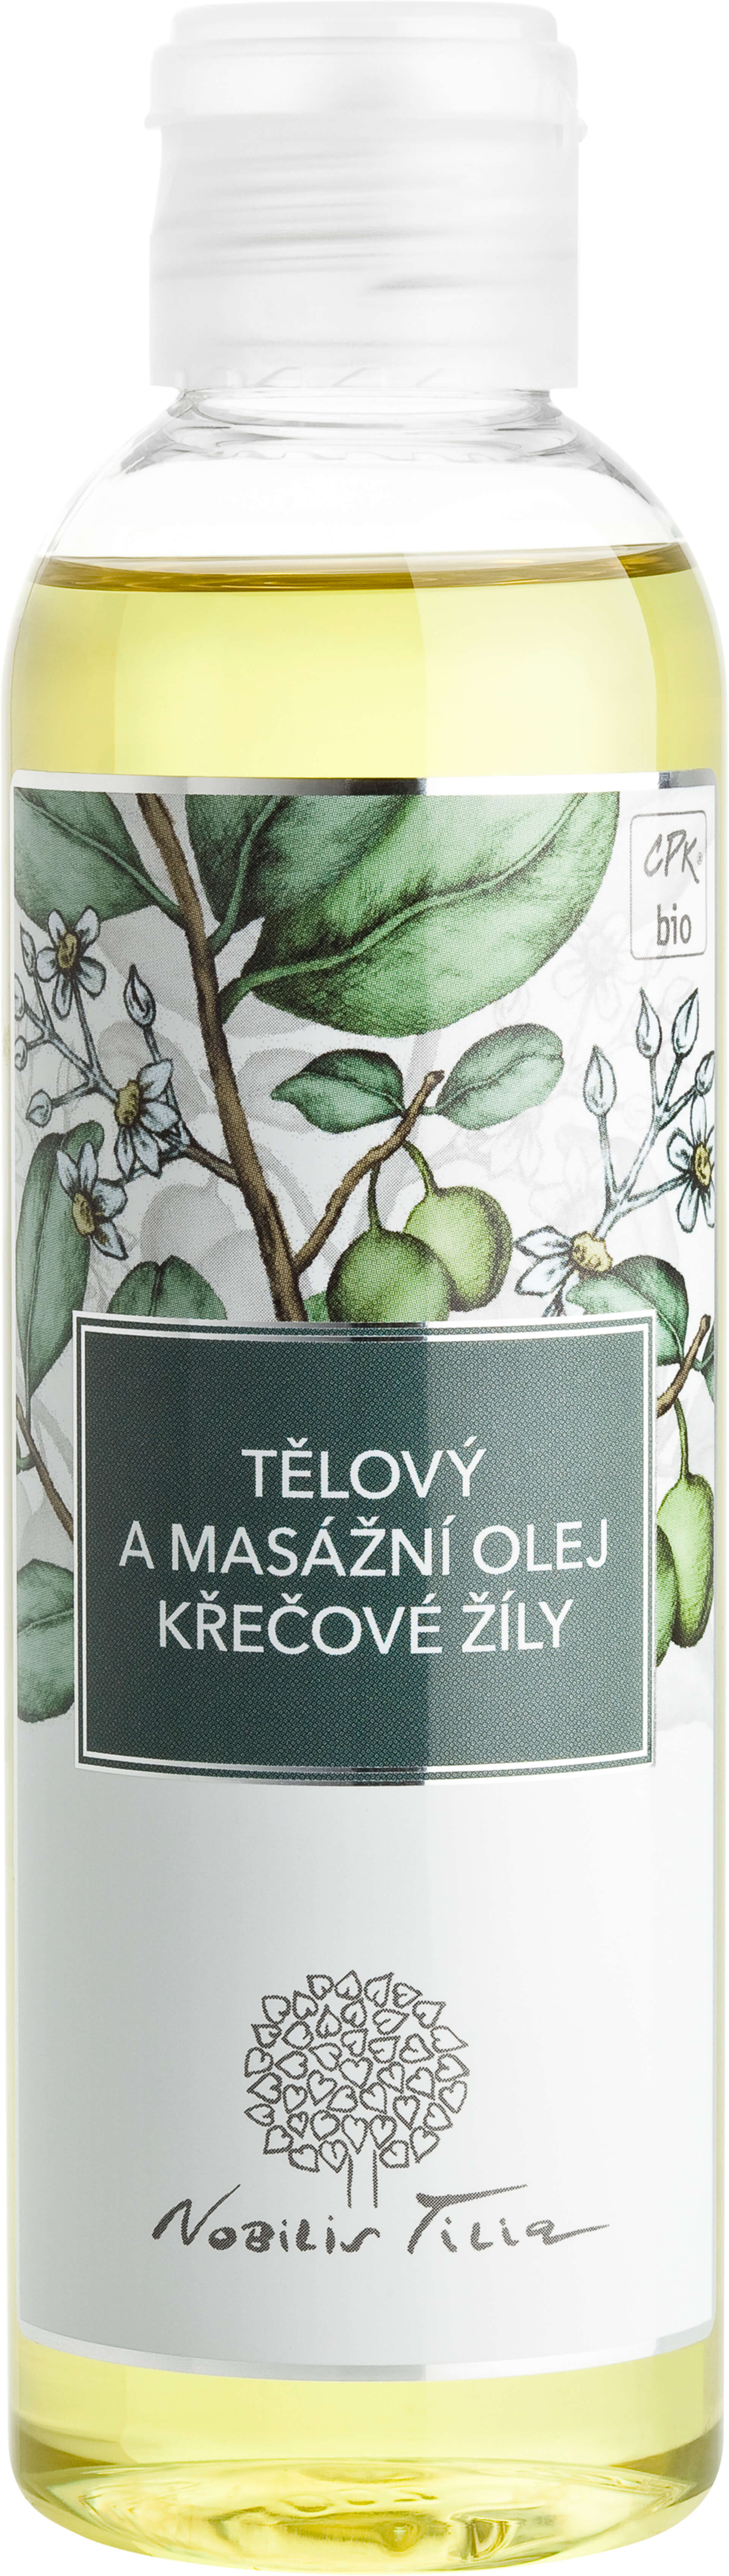 Nobilis Tilia Tělový a masážní olej Křečové žíly 200 ml